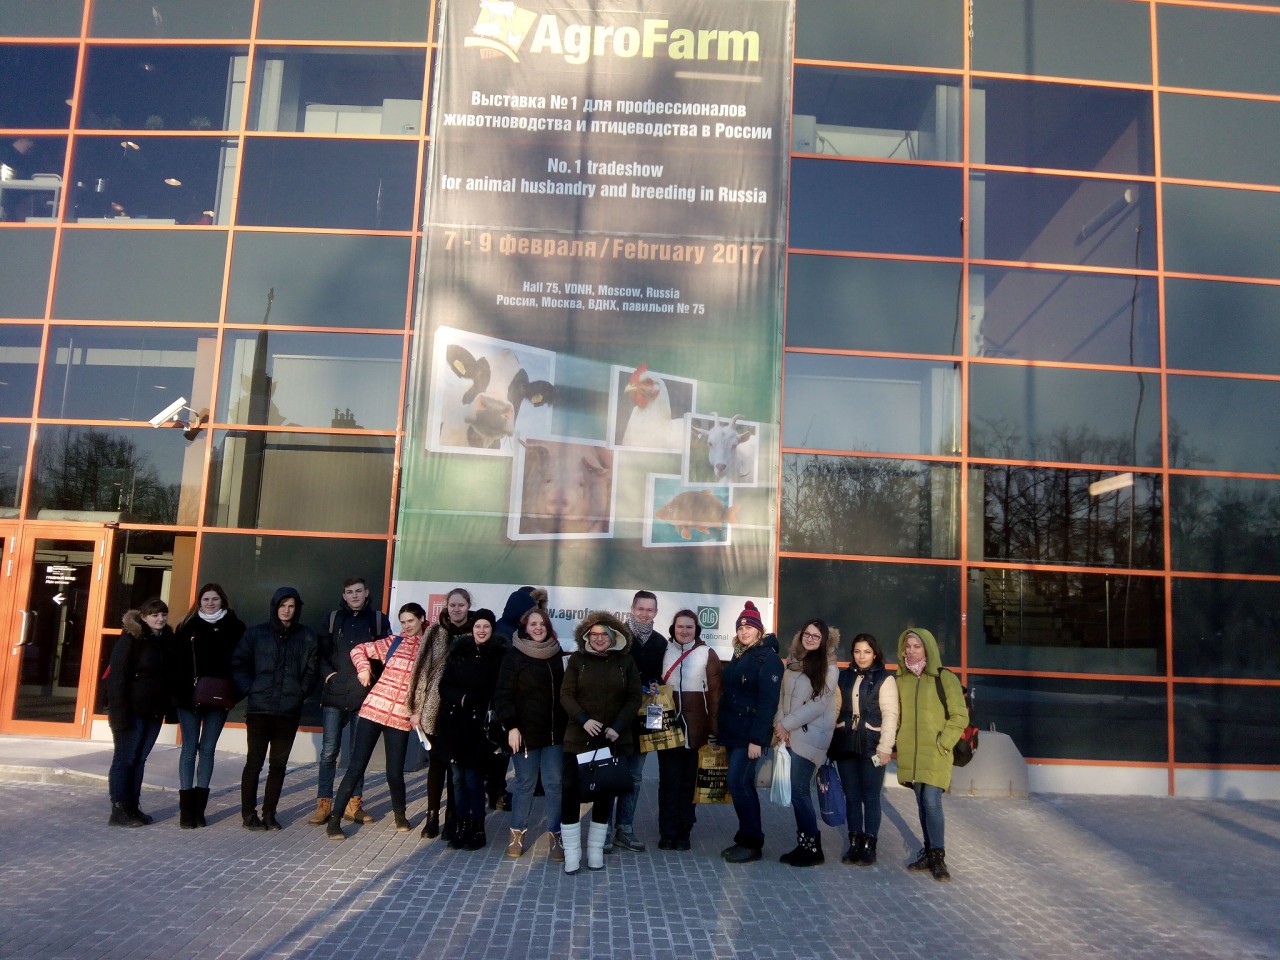 Посещение международной выставки "АгроФарм"  в рамках Недели ветеринарно-кинологических дисциплин